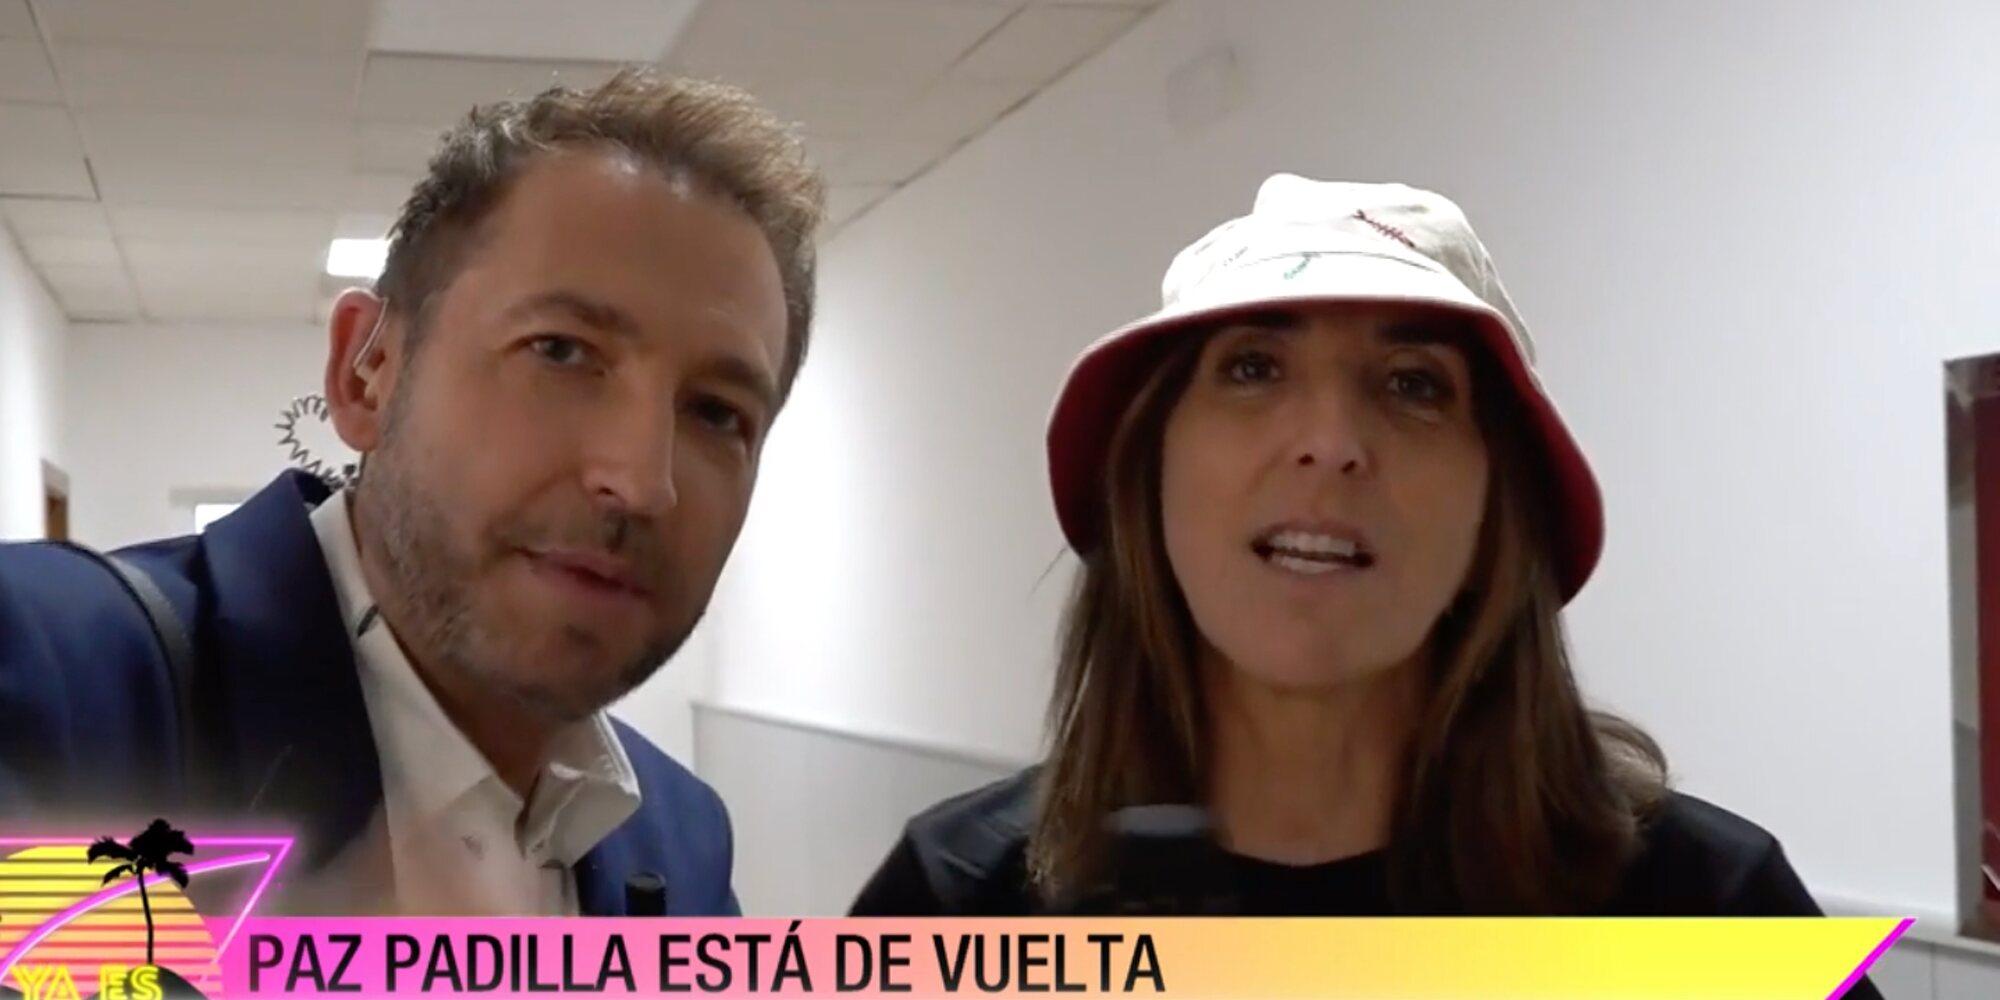 Paz Padilla regresa a Mediaset por primera vez desde su despido con morreo a Frank Blanco incluido